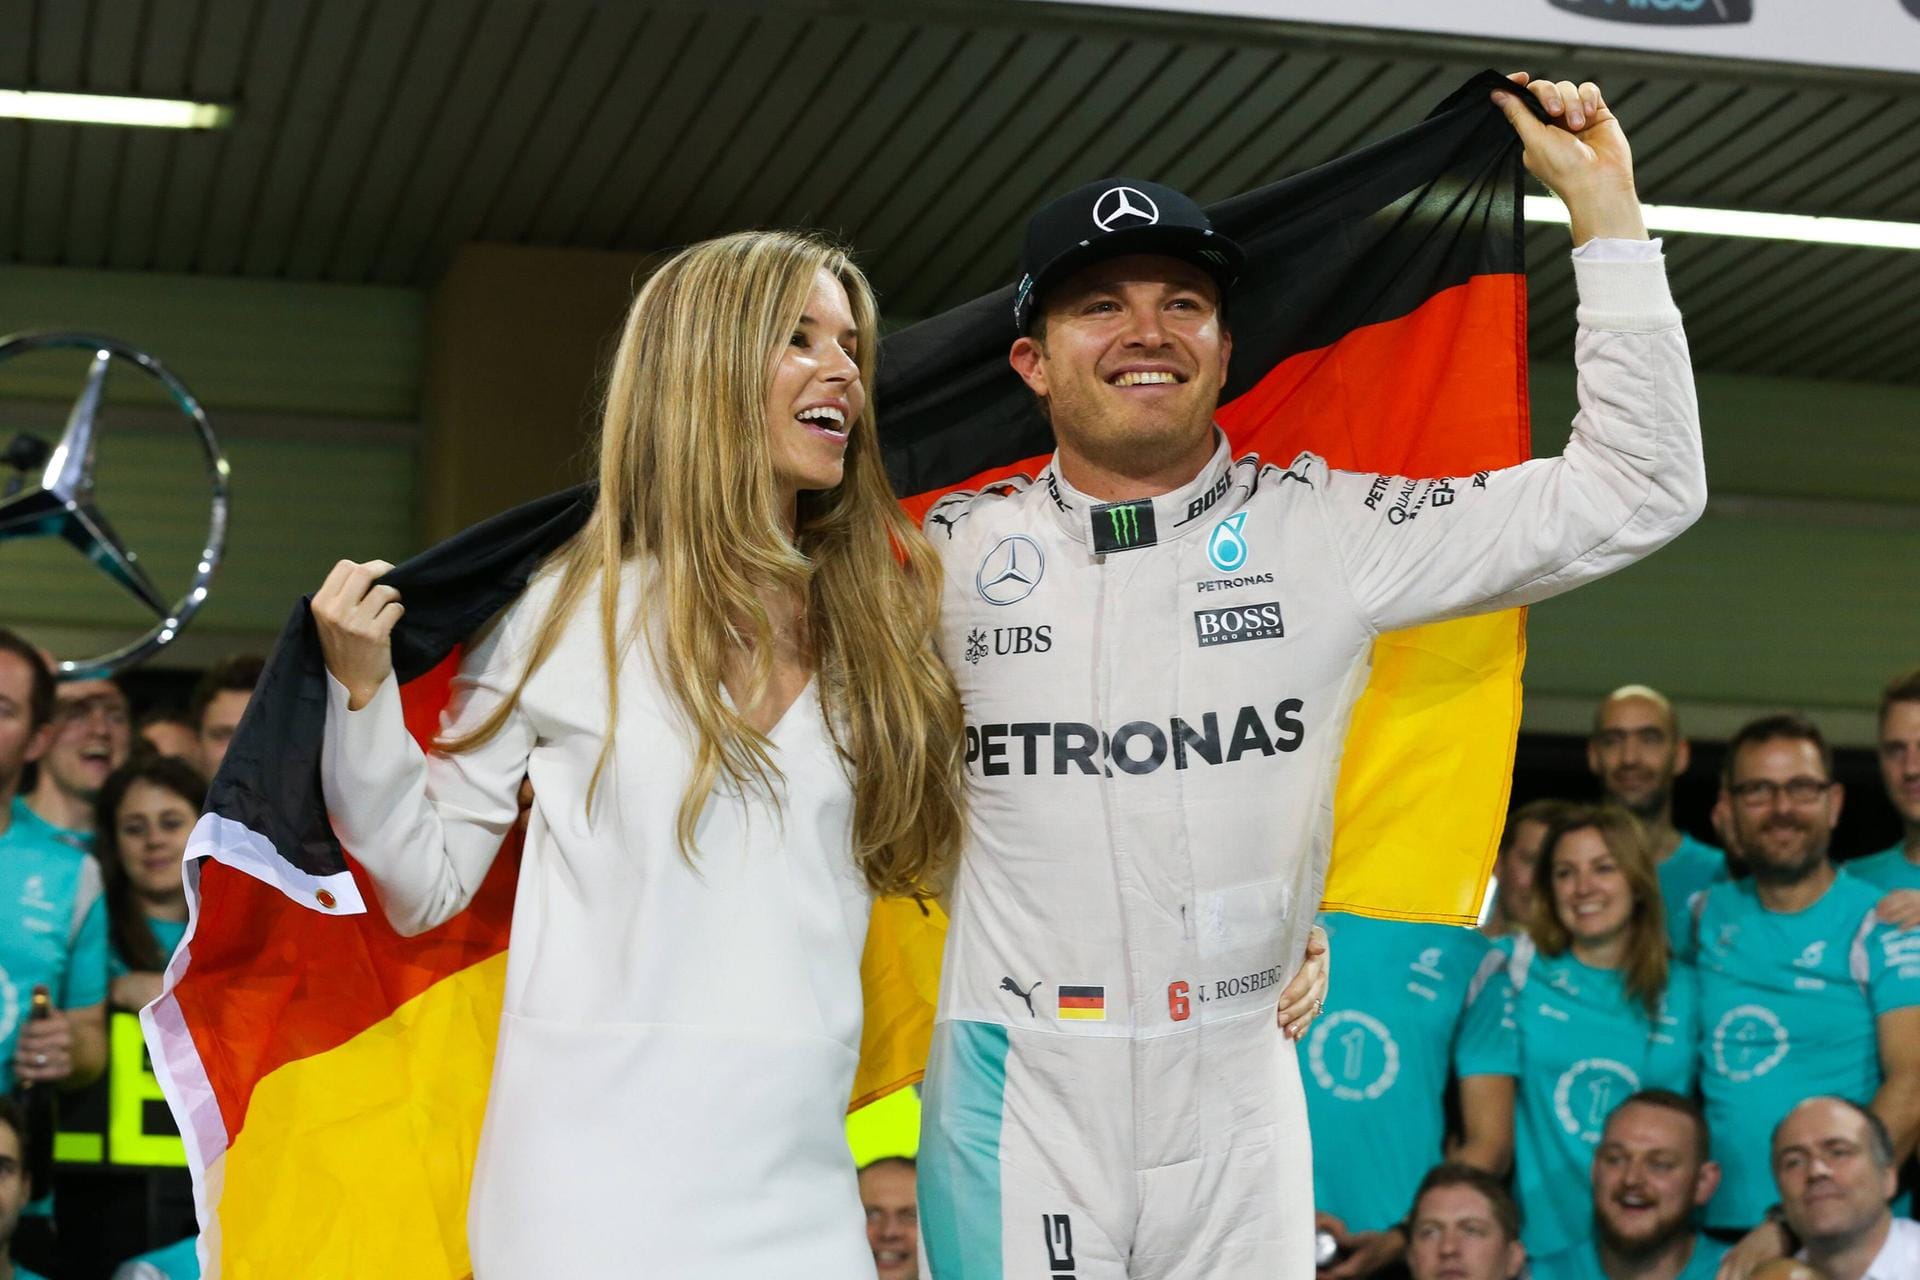 In der Saison 2016 erreichte das Duell Hamilton gegen Rosberg seinen Höhepunkt. Durch eine verpatzte erste Saisonhälfte von Hamilton führte Rosberg die WM knapp bis zum Schluss an. Doch Rosberg holte am Ende den Titel. Wenige Tage nach dem größten Erfolg seiner Karriere trat der Wiesbadener zurück.